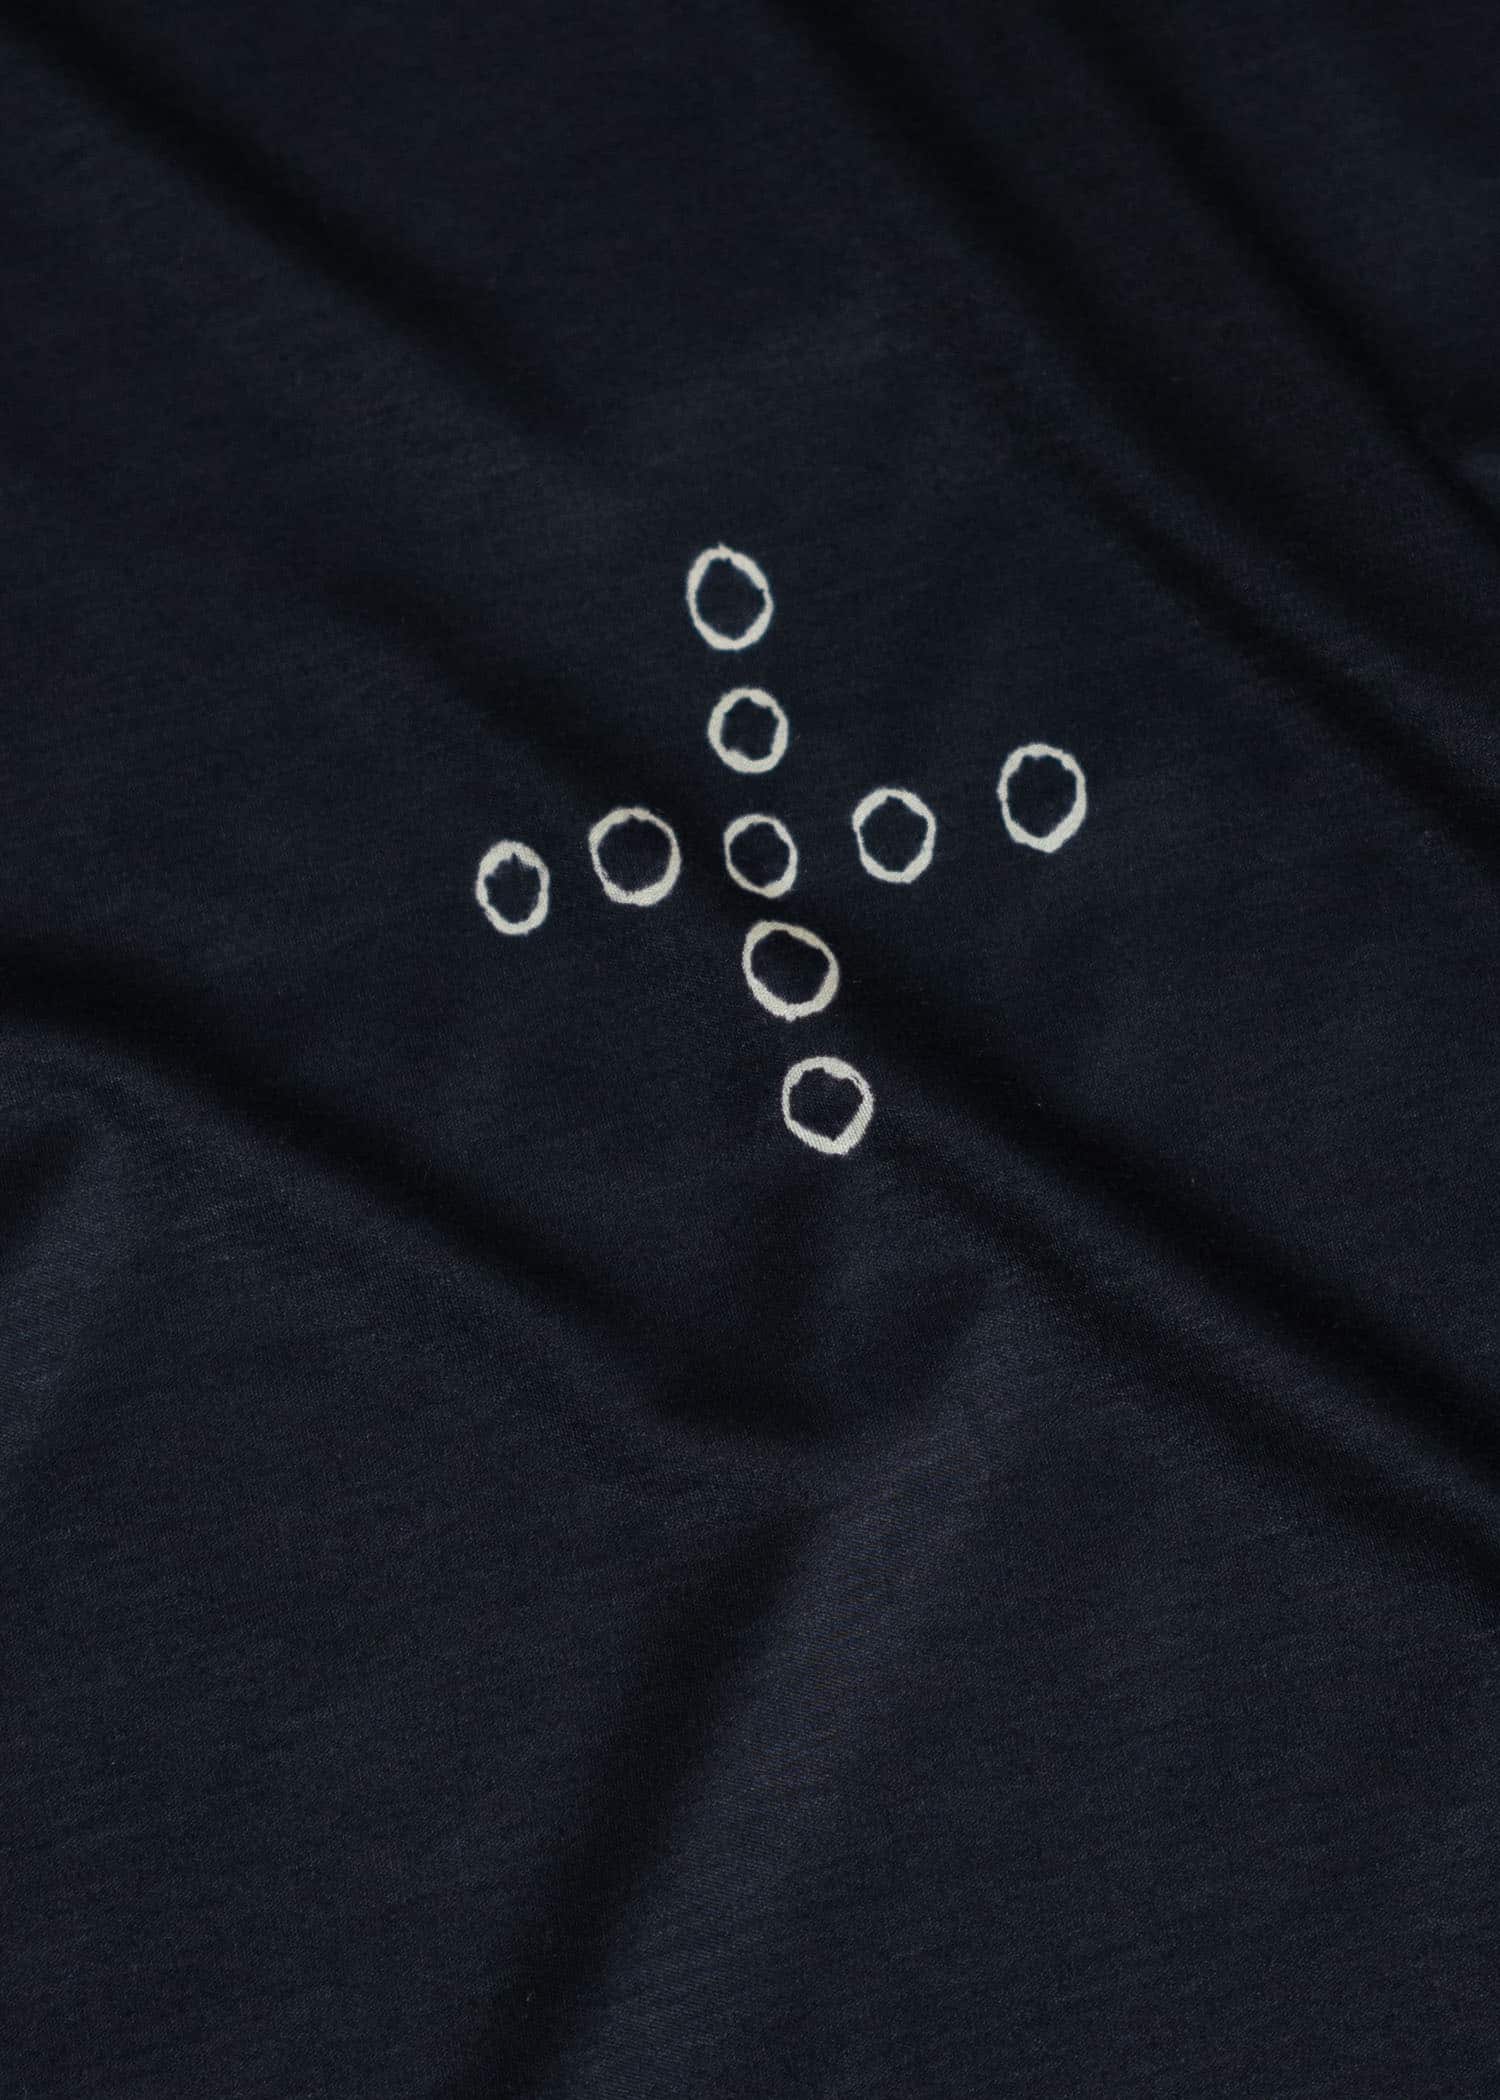 SUZUSAN Micro Modal Short Sleeve T-Shirt(Tsukidashi Kanoko Shibori """"o+"""") Black x  Grege